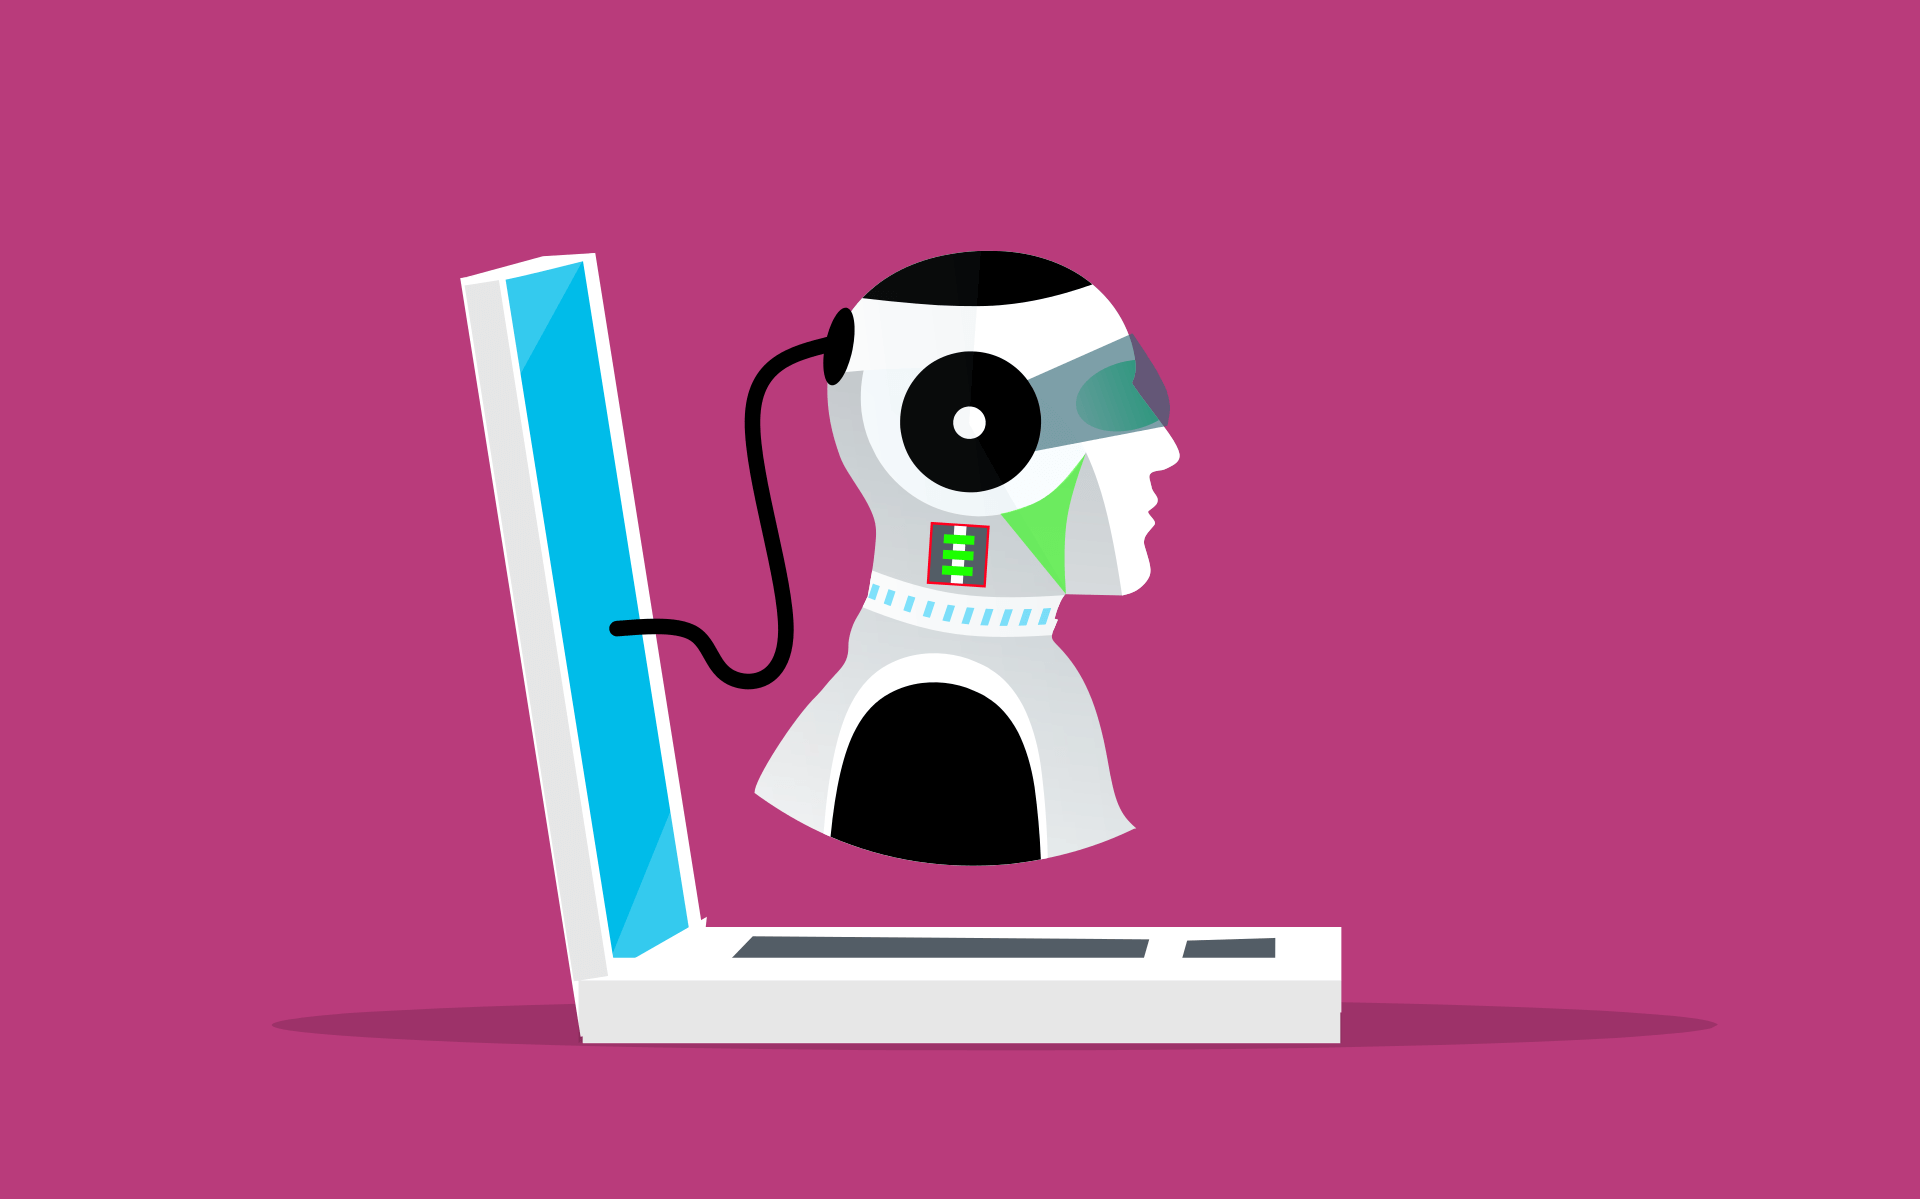 这张图片展示了一个卡通风格的机器人头部与笔记本电脑相连，背景为纯色。机器人看起来像是在使用电脑。